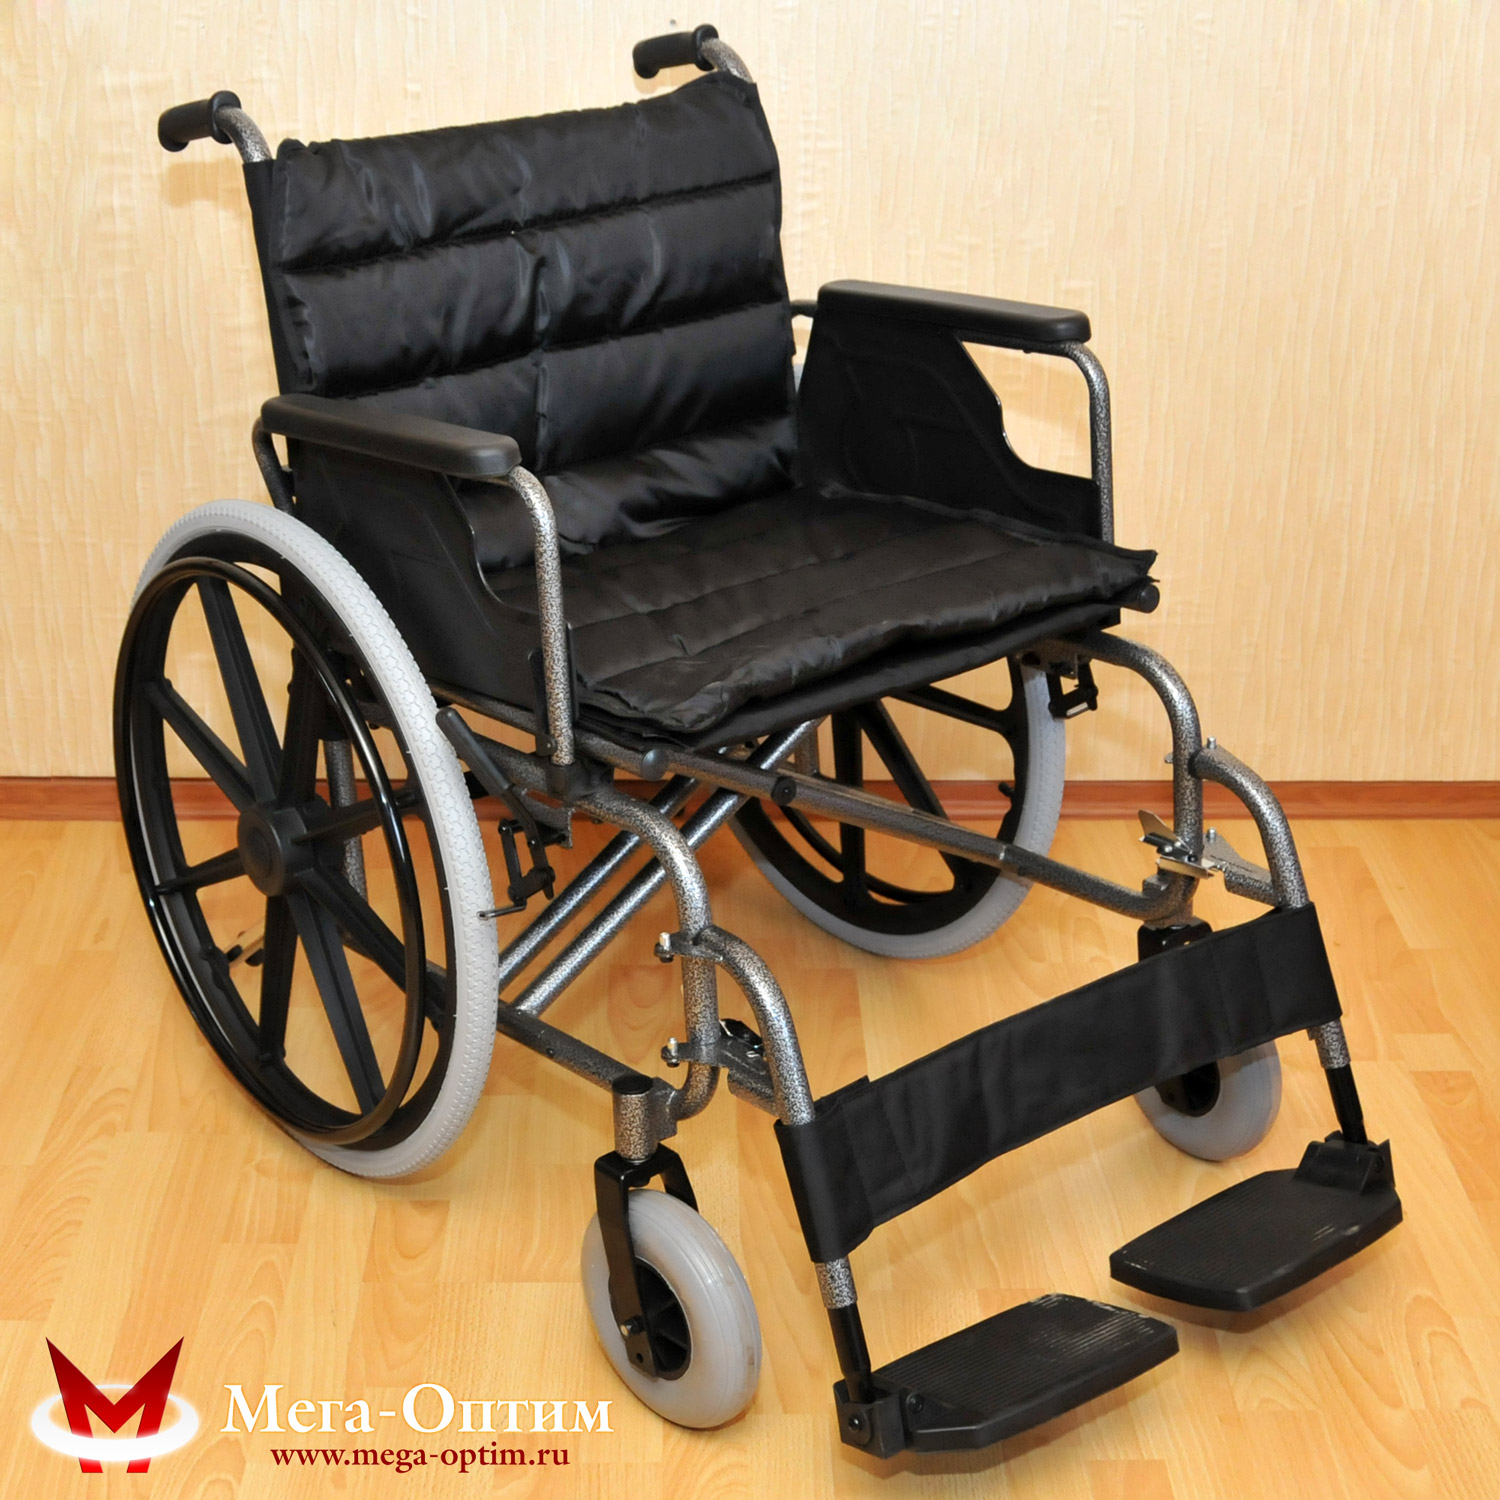 Комфортабельная инвалидная кресло-коляска